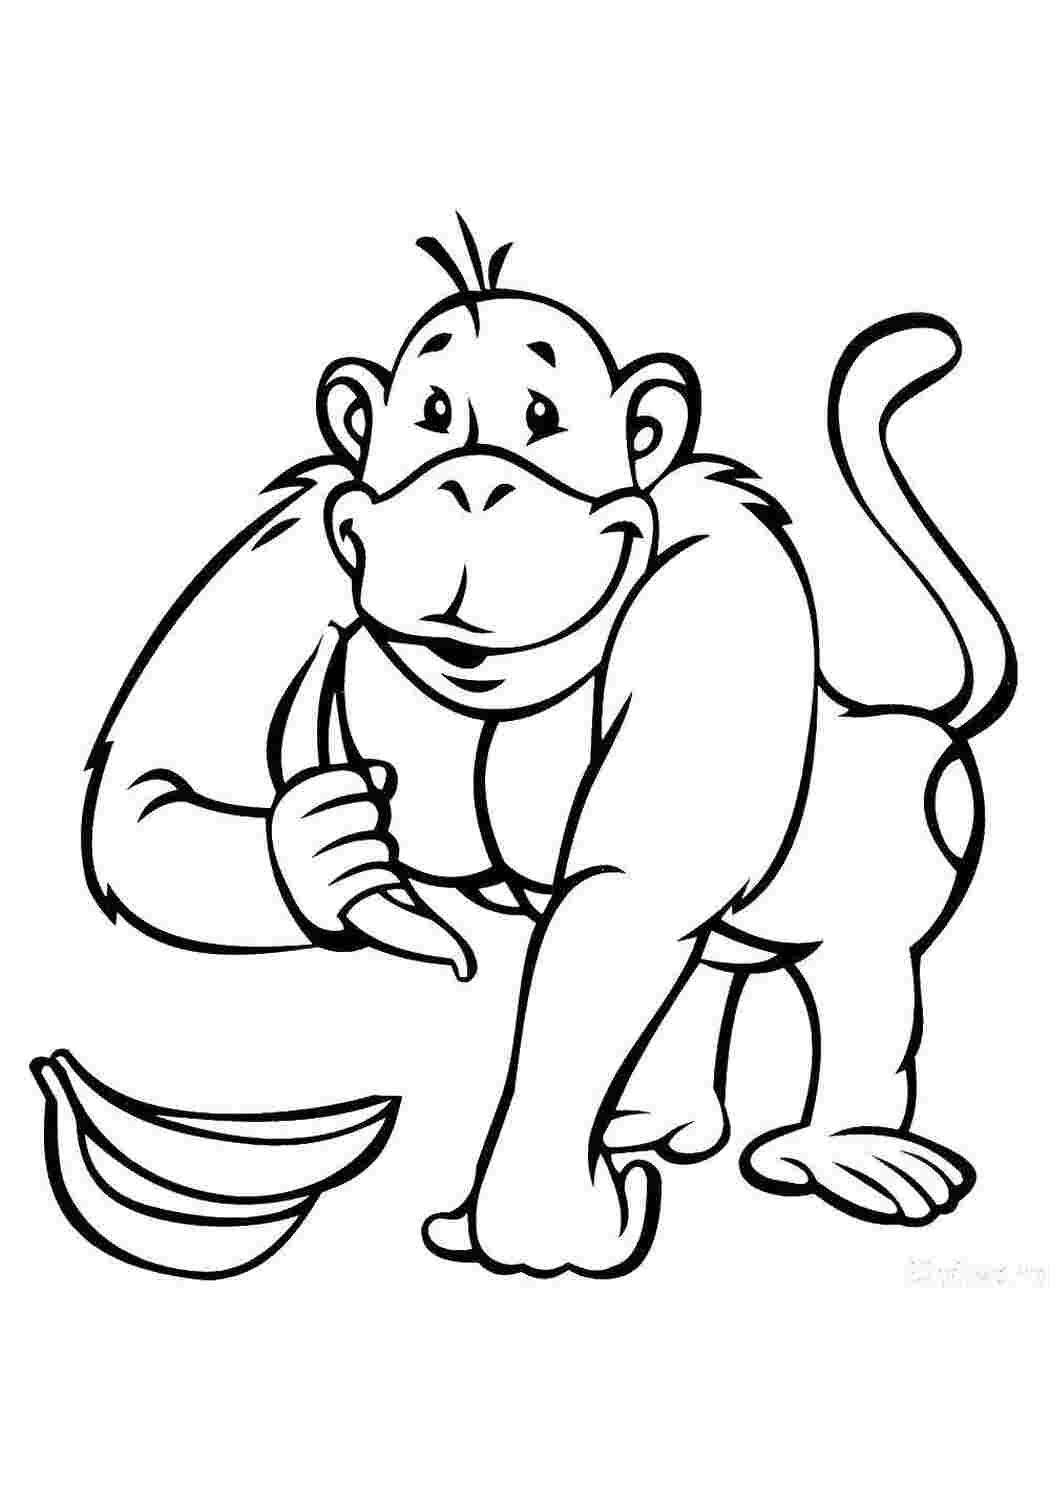 Детская раскраска с примером цвета обезьяна с бананом